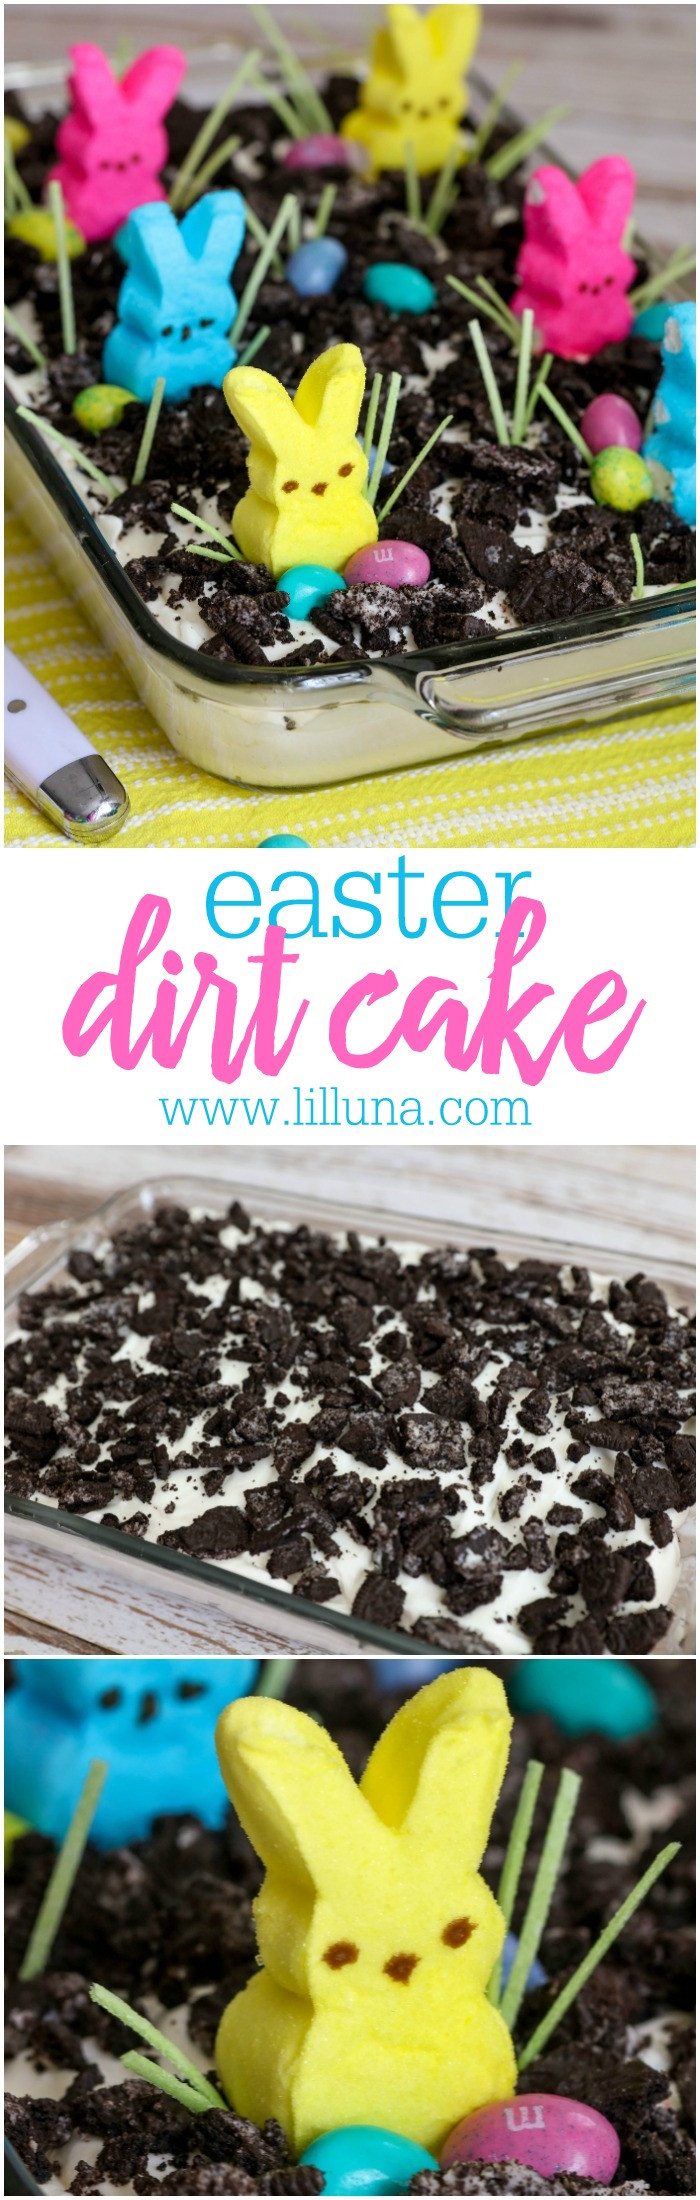 Easter Dirt Cake Recipe
 BEST Easter Dirt Cake